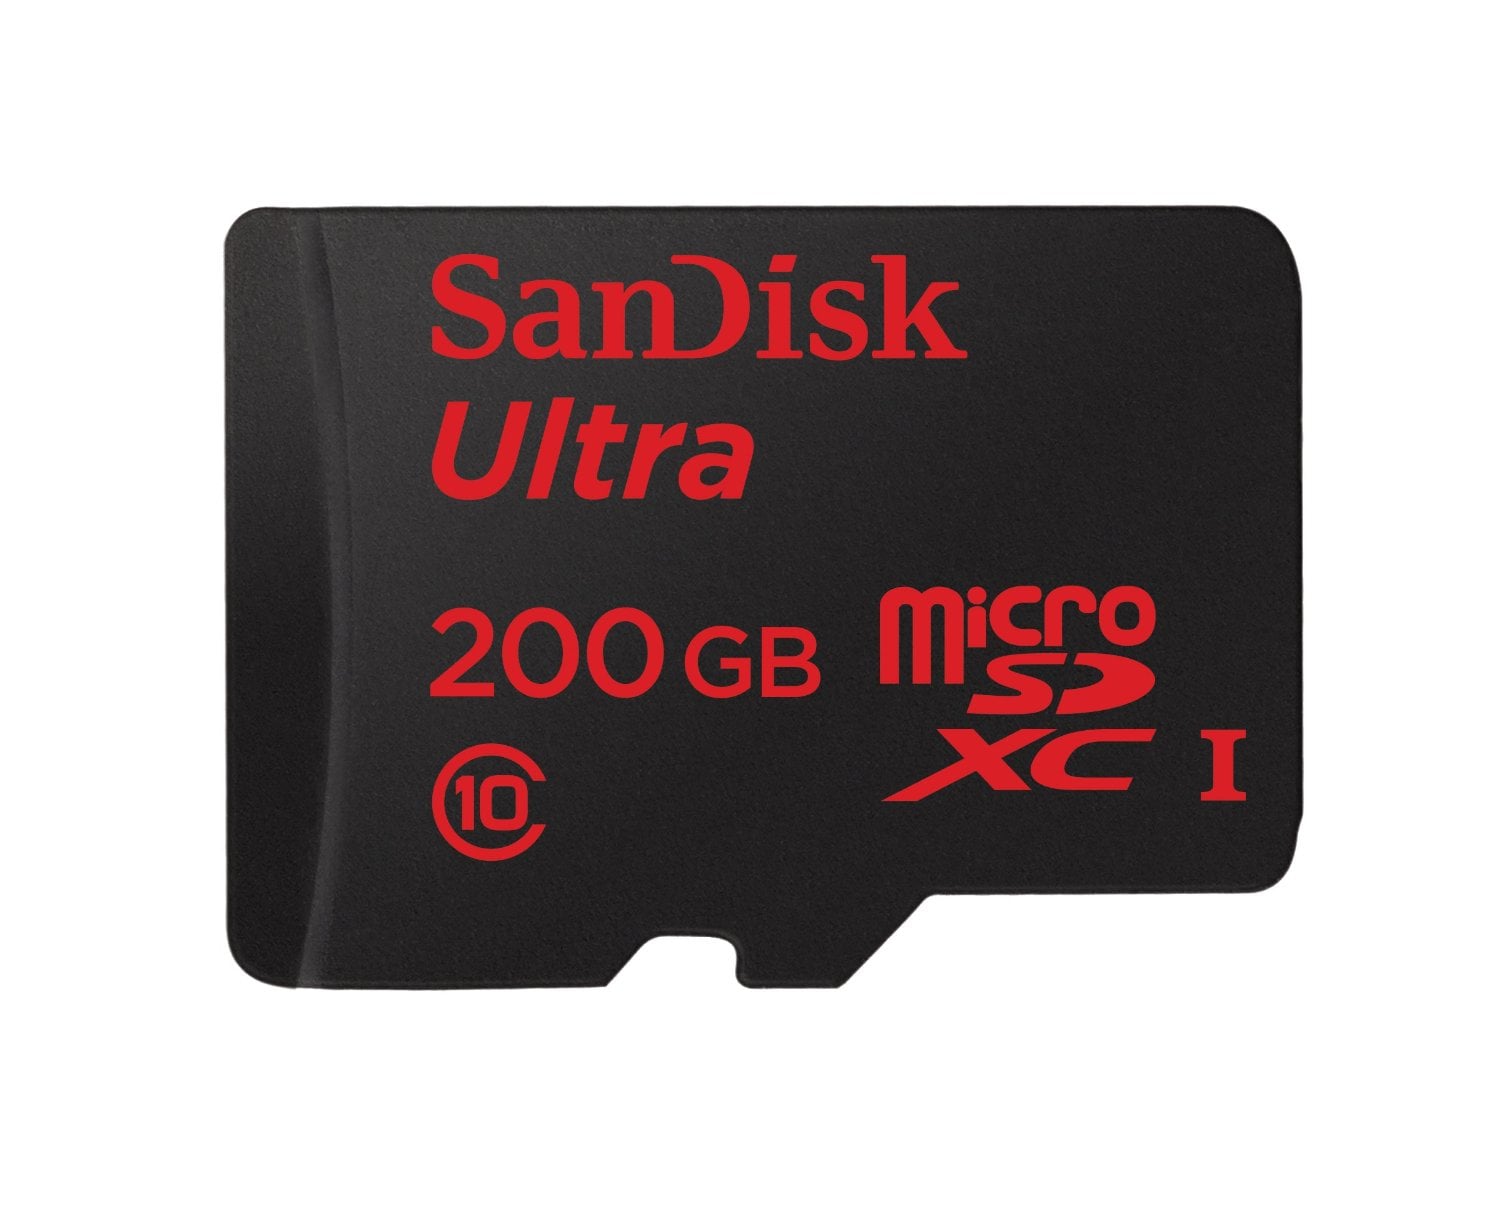 Sandisk Ultra 200GB microSD card